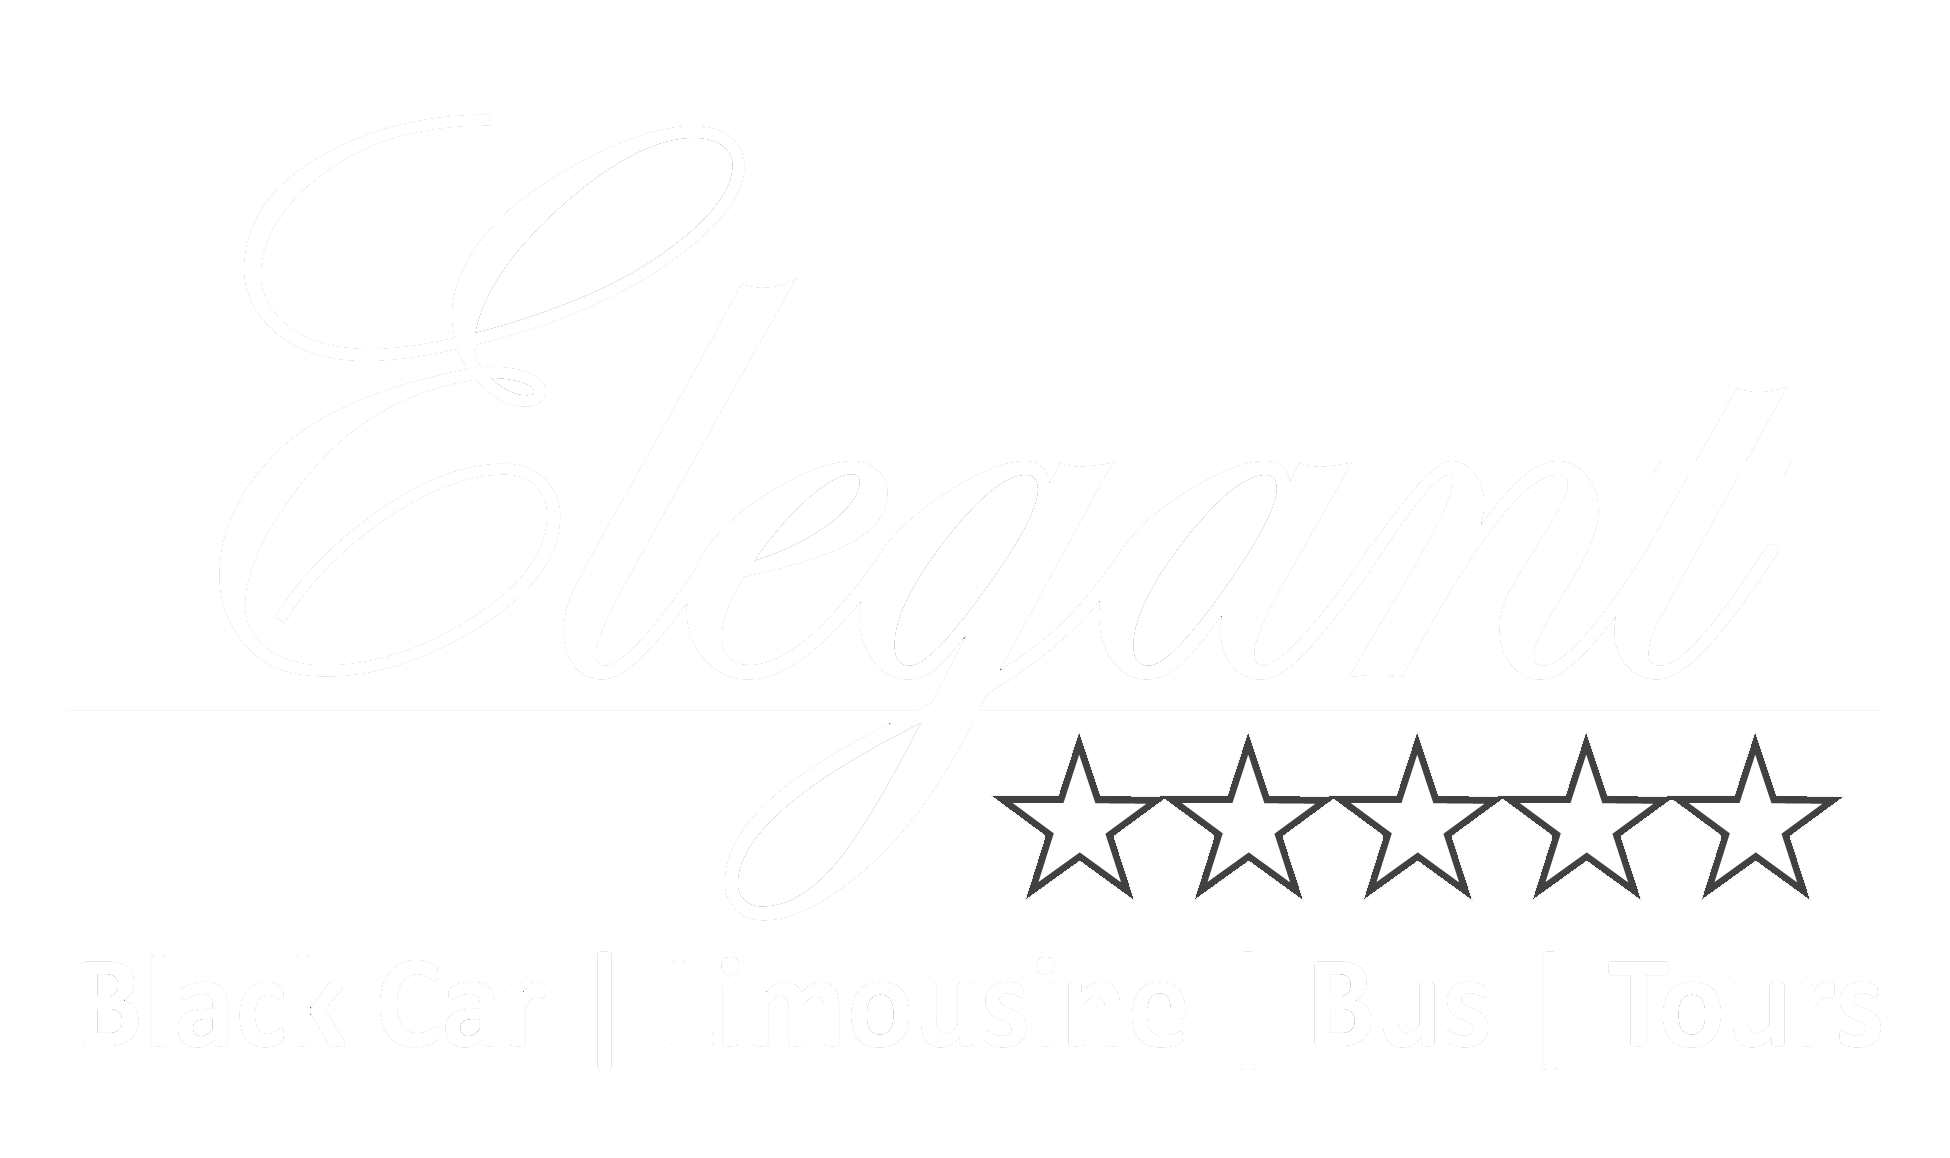 Elegant Black and White Logo - Black Car | Limousine | Bus | Tours | South Texas | Elegant Ride